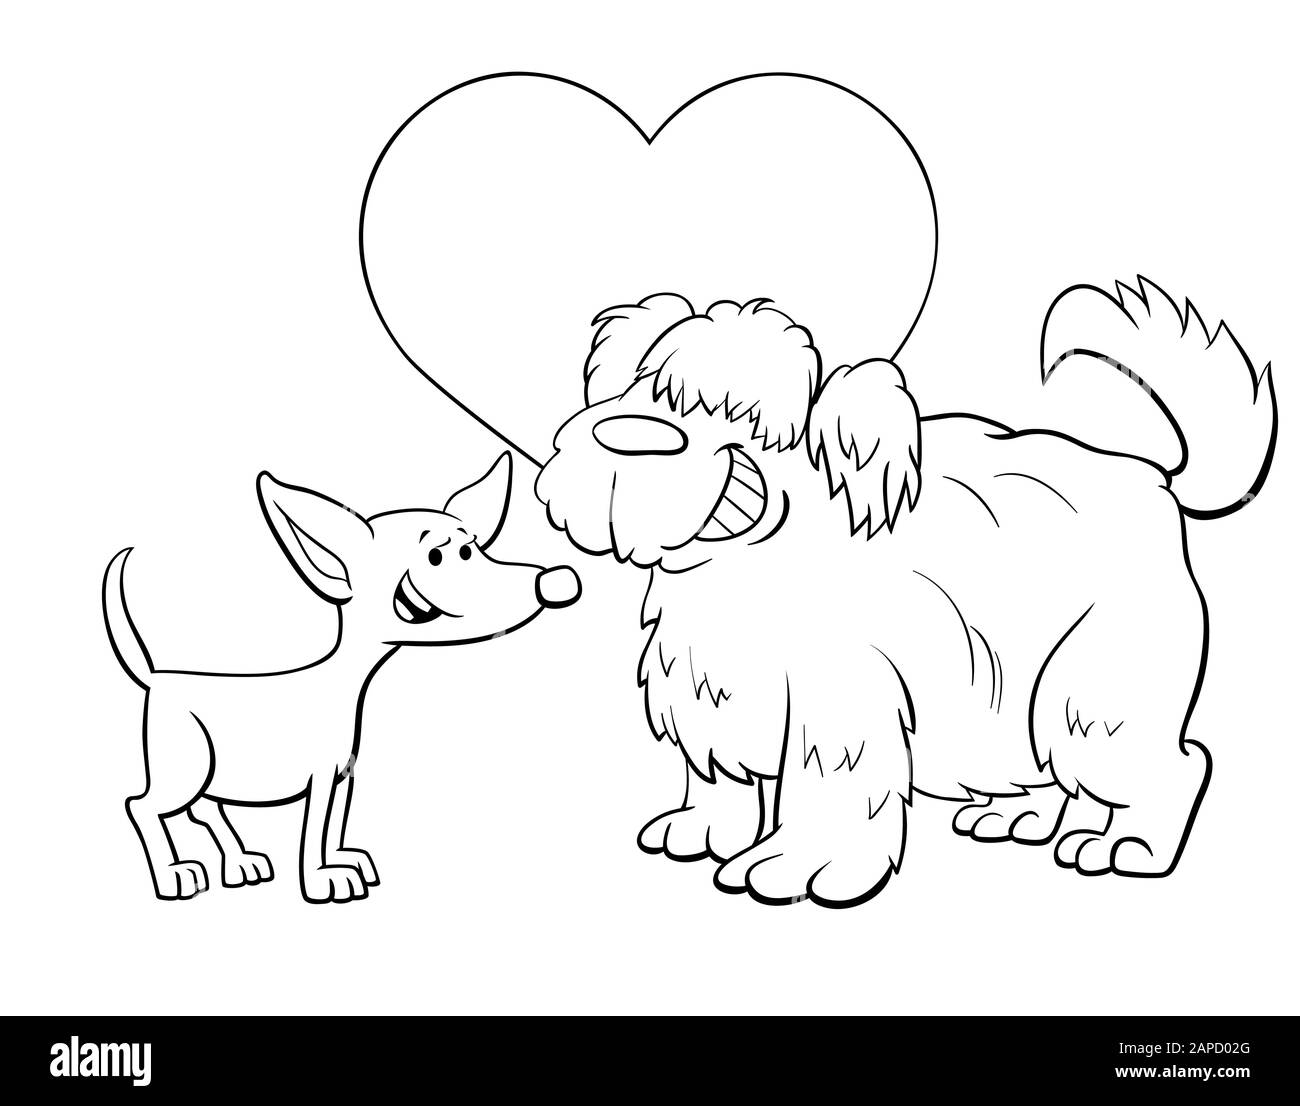 Schwarz-weiß Valentines Day Grußkarte Cartoon Illustration mit Lustigen Hundefiguren auf der Seite "Love Coloring Book" Stock Vektor